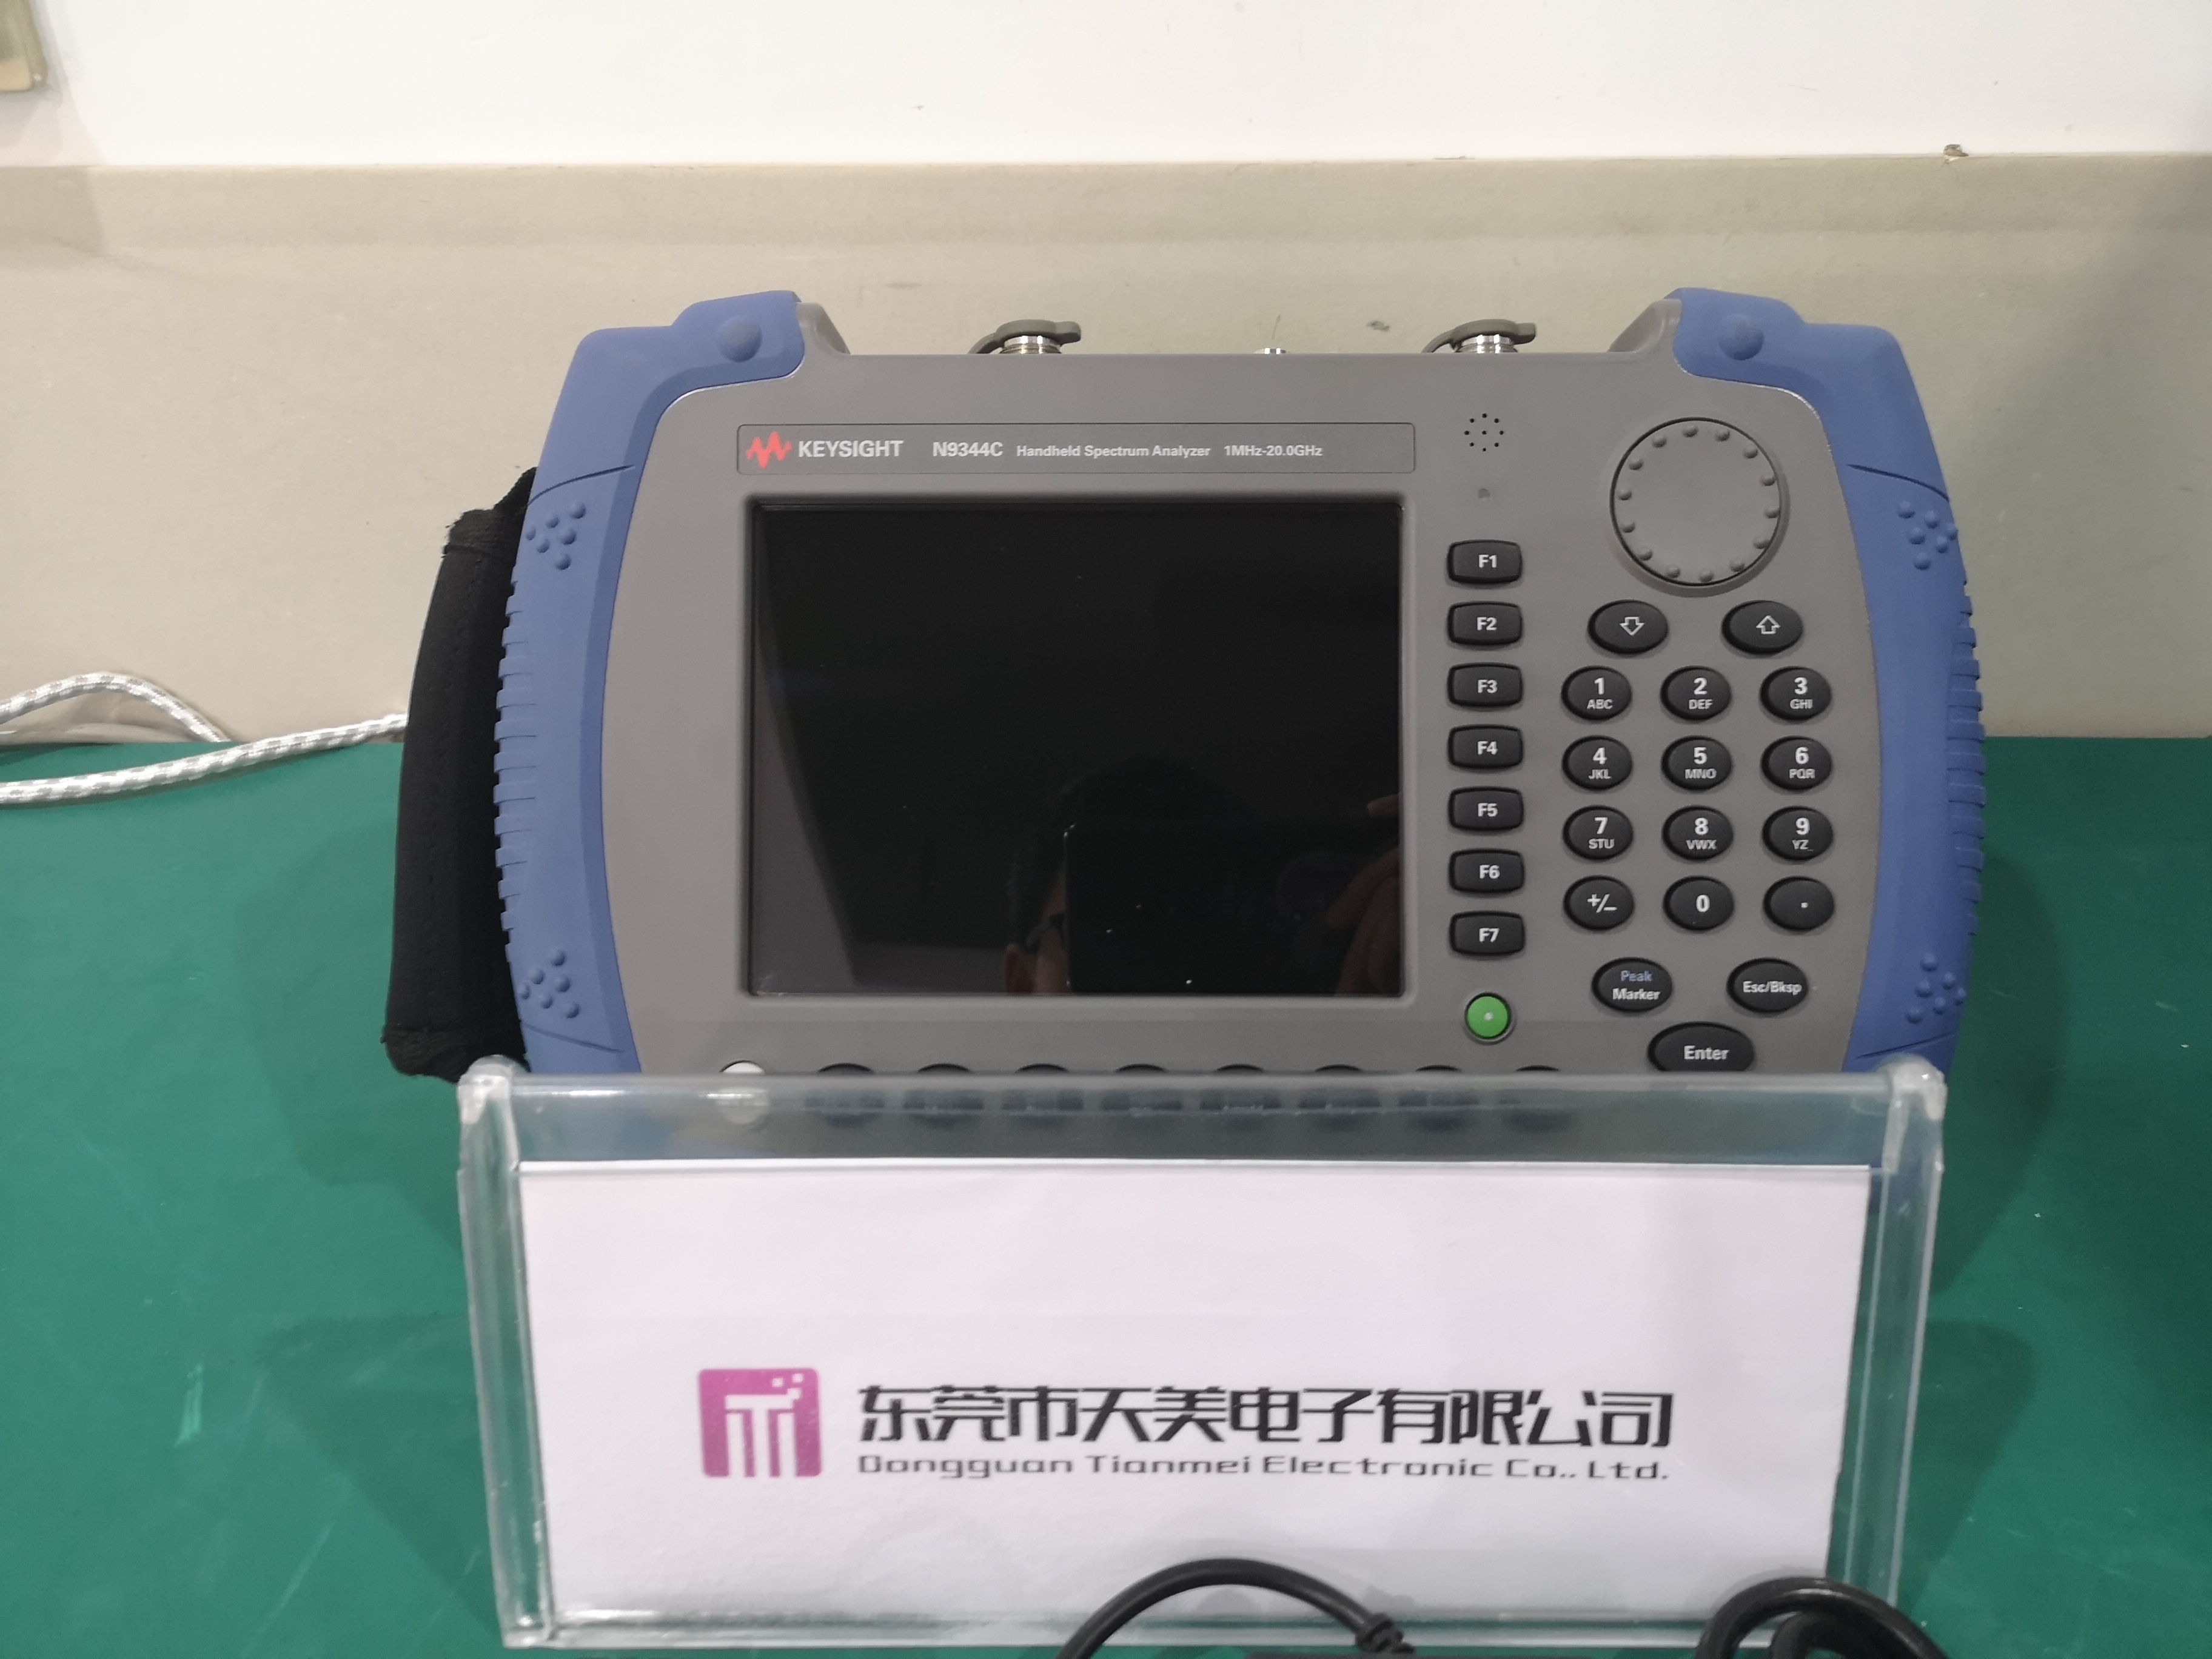 Keysight是德N9344C手持式频谱分析仪